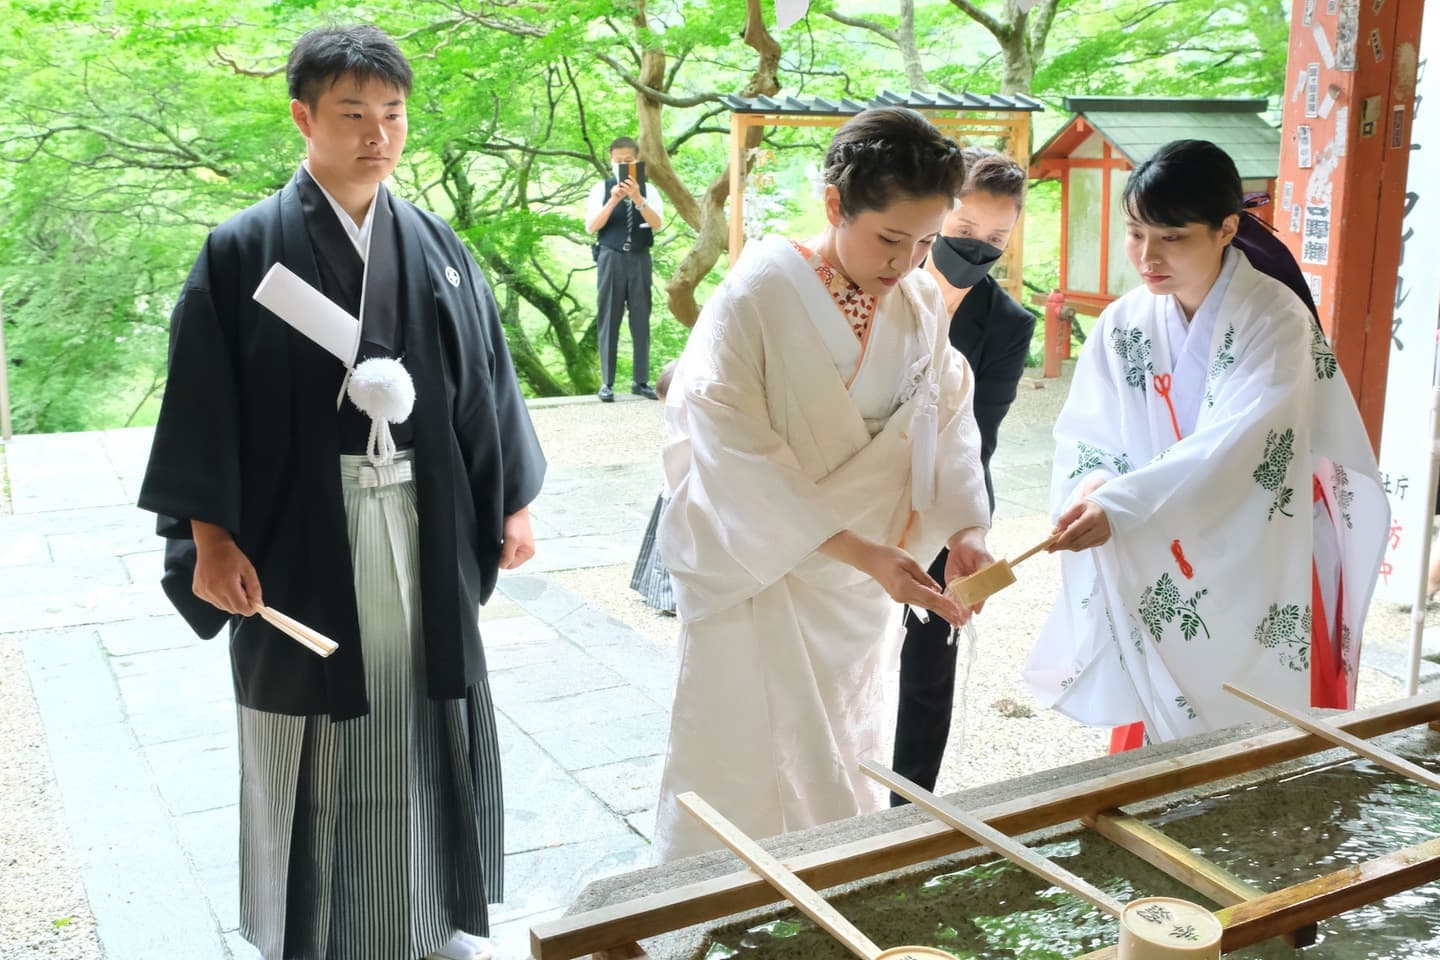 談山神社で結婚式の花嫁さんと新郎